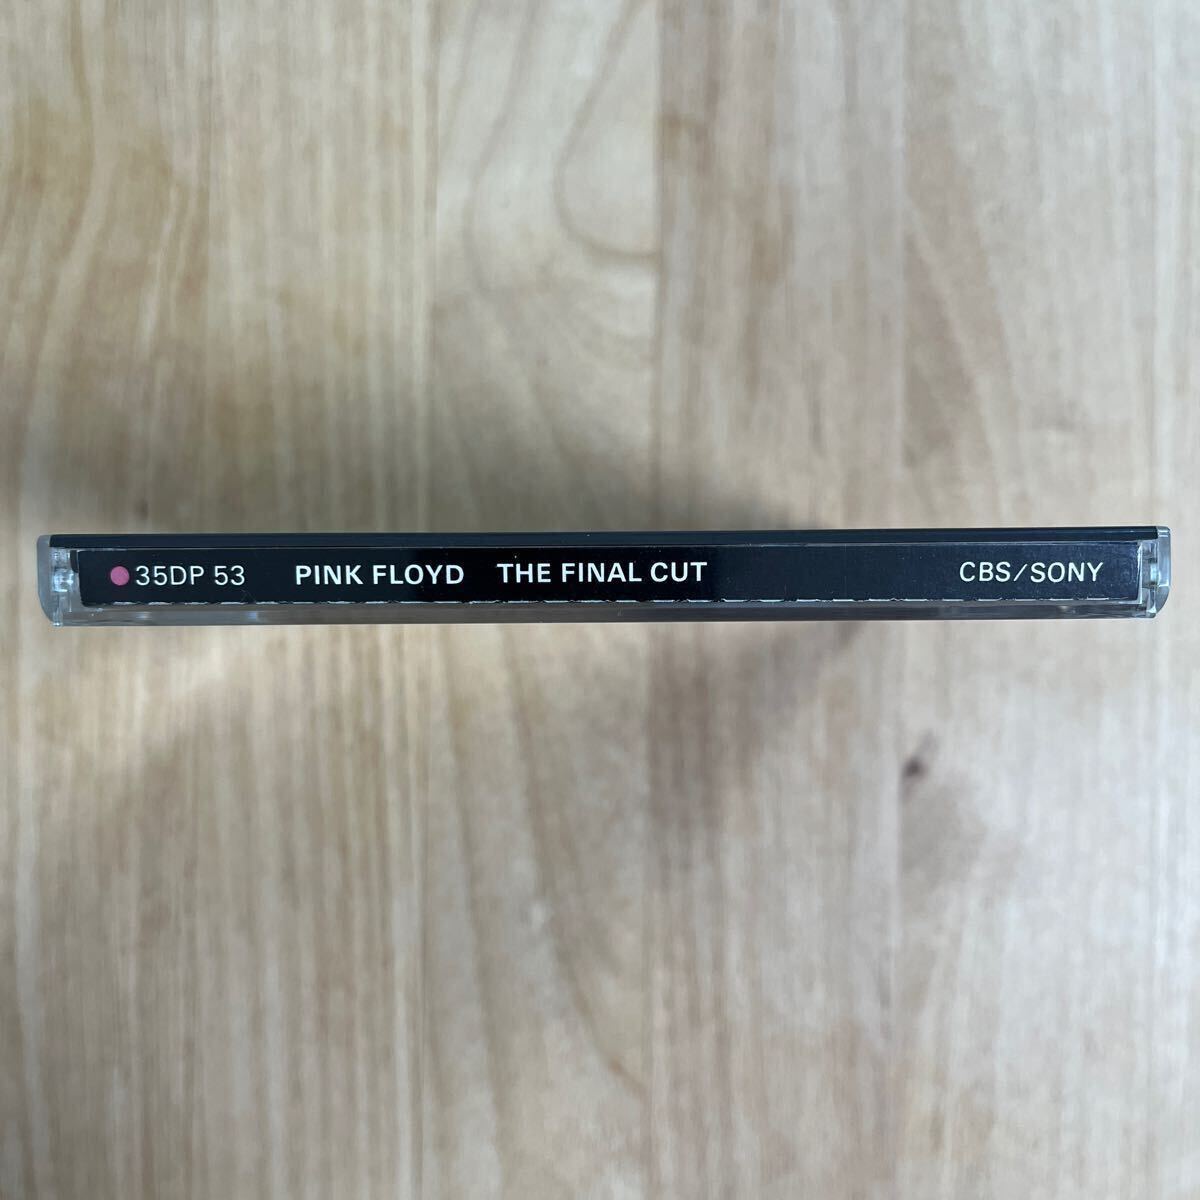 【 旧規格 CSR刻印 35DP -53 】 ピンク・フロイド / ファイナル・カット PINK FLOYD / THE FINAL CUT CBS SONY 国内初期3500円盤CD _画像7